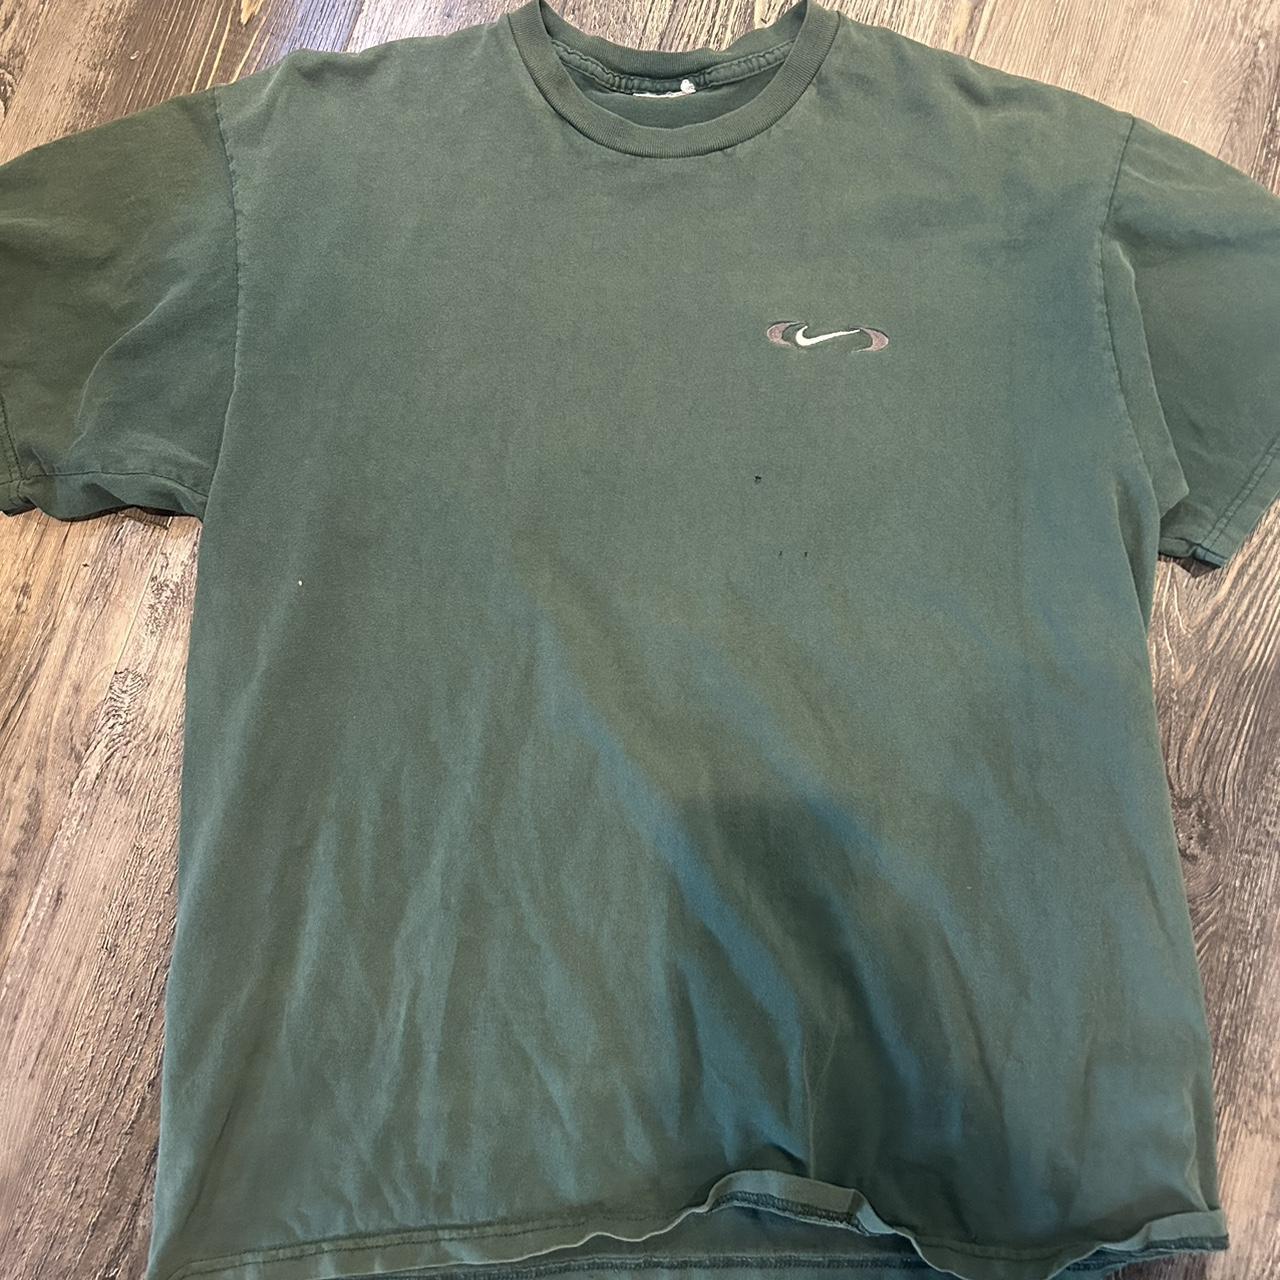 Vintage forest green Nike shirt 90s... - Depop